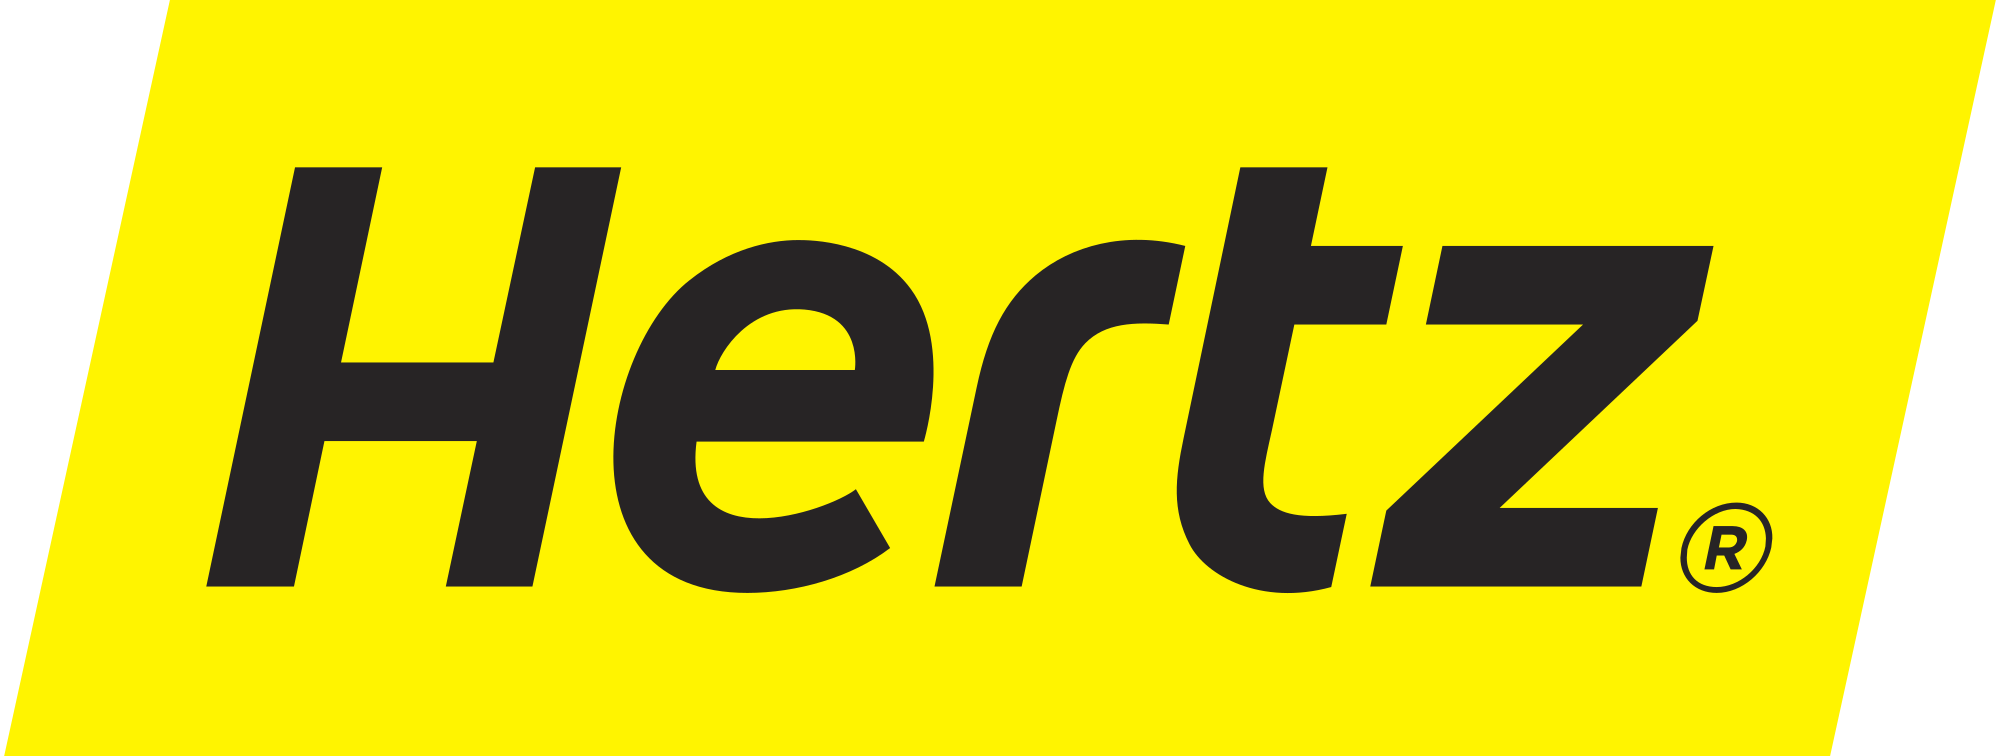 Hertz Logo - Hertz Logo.svg